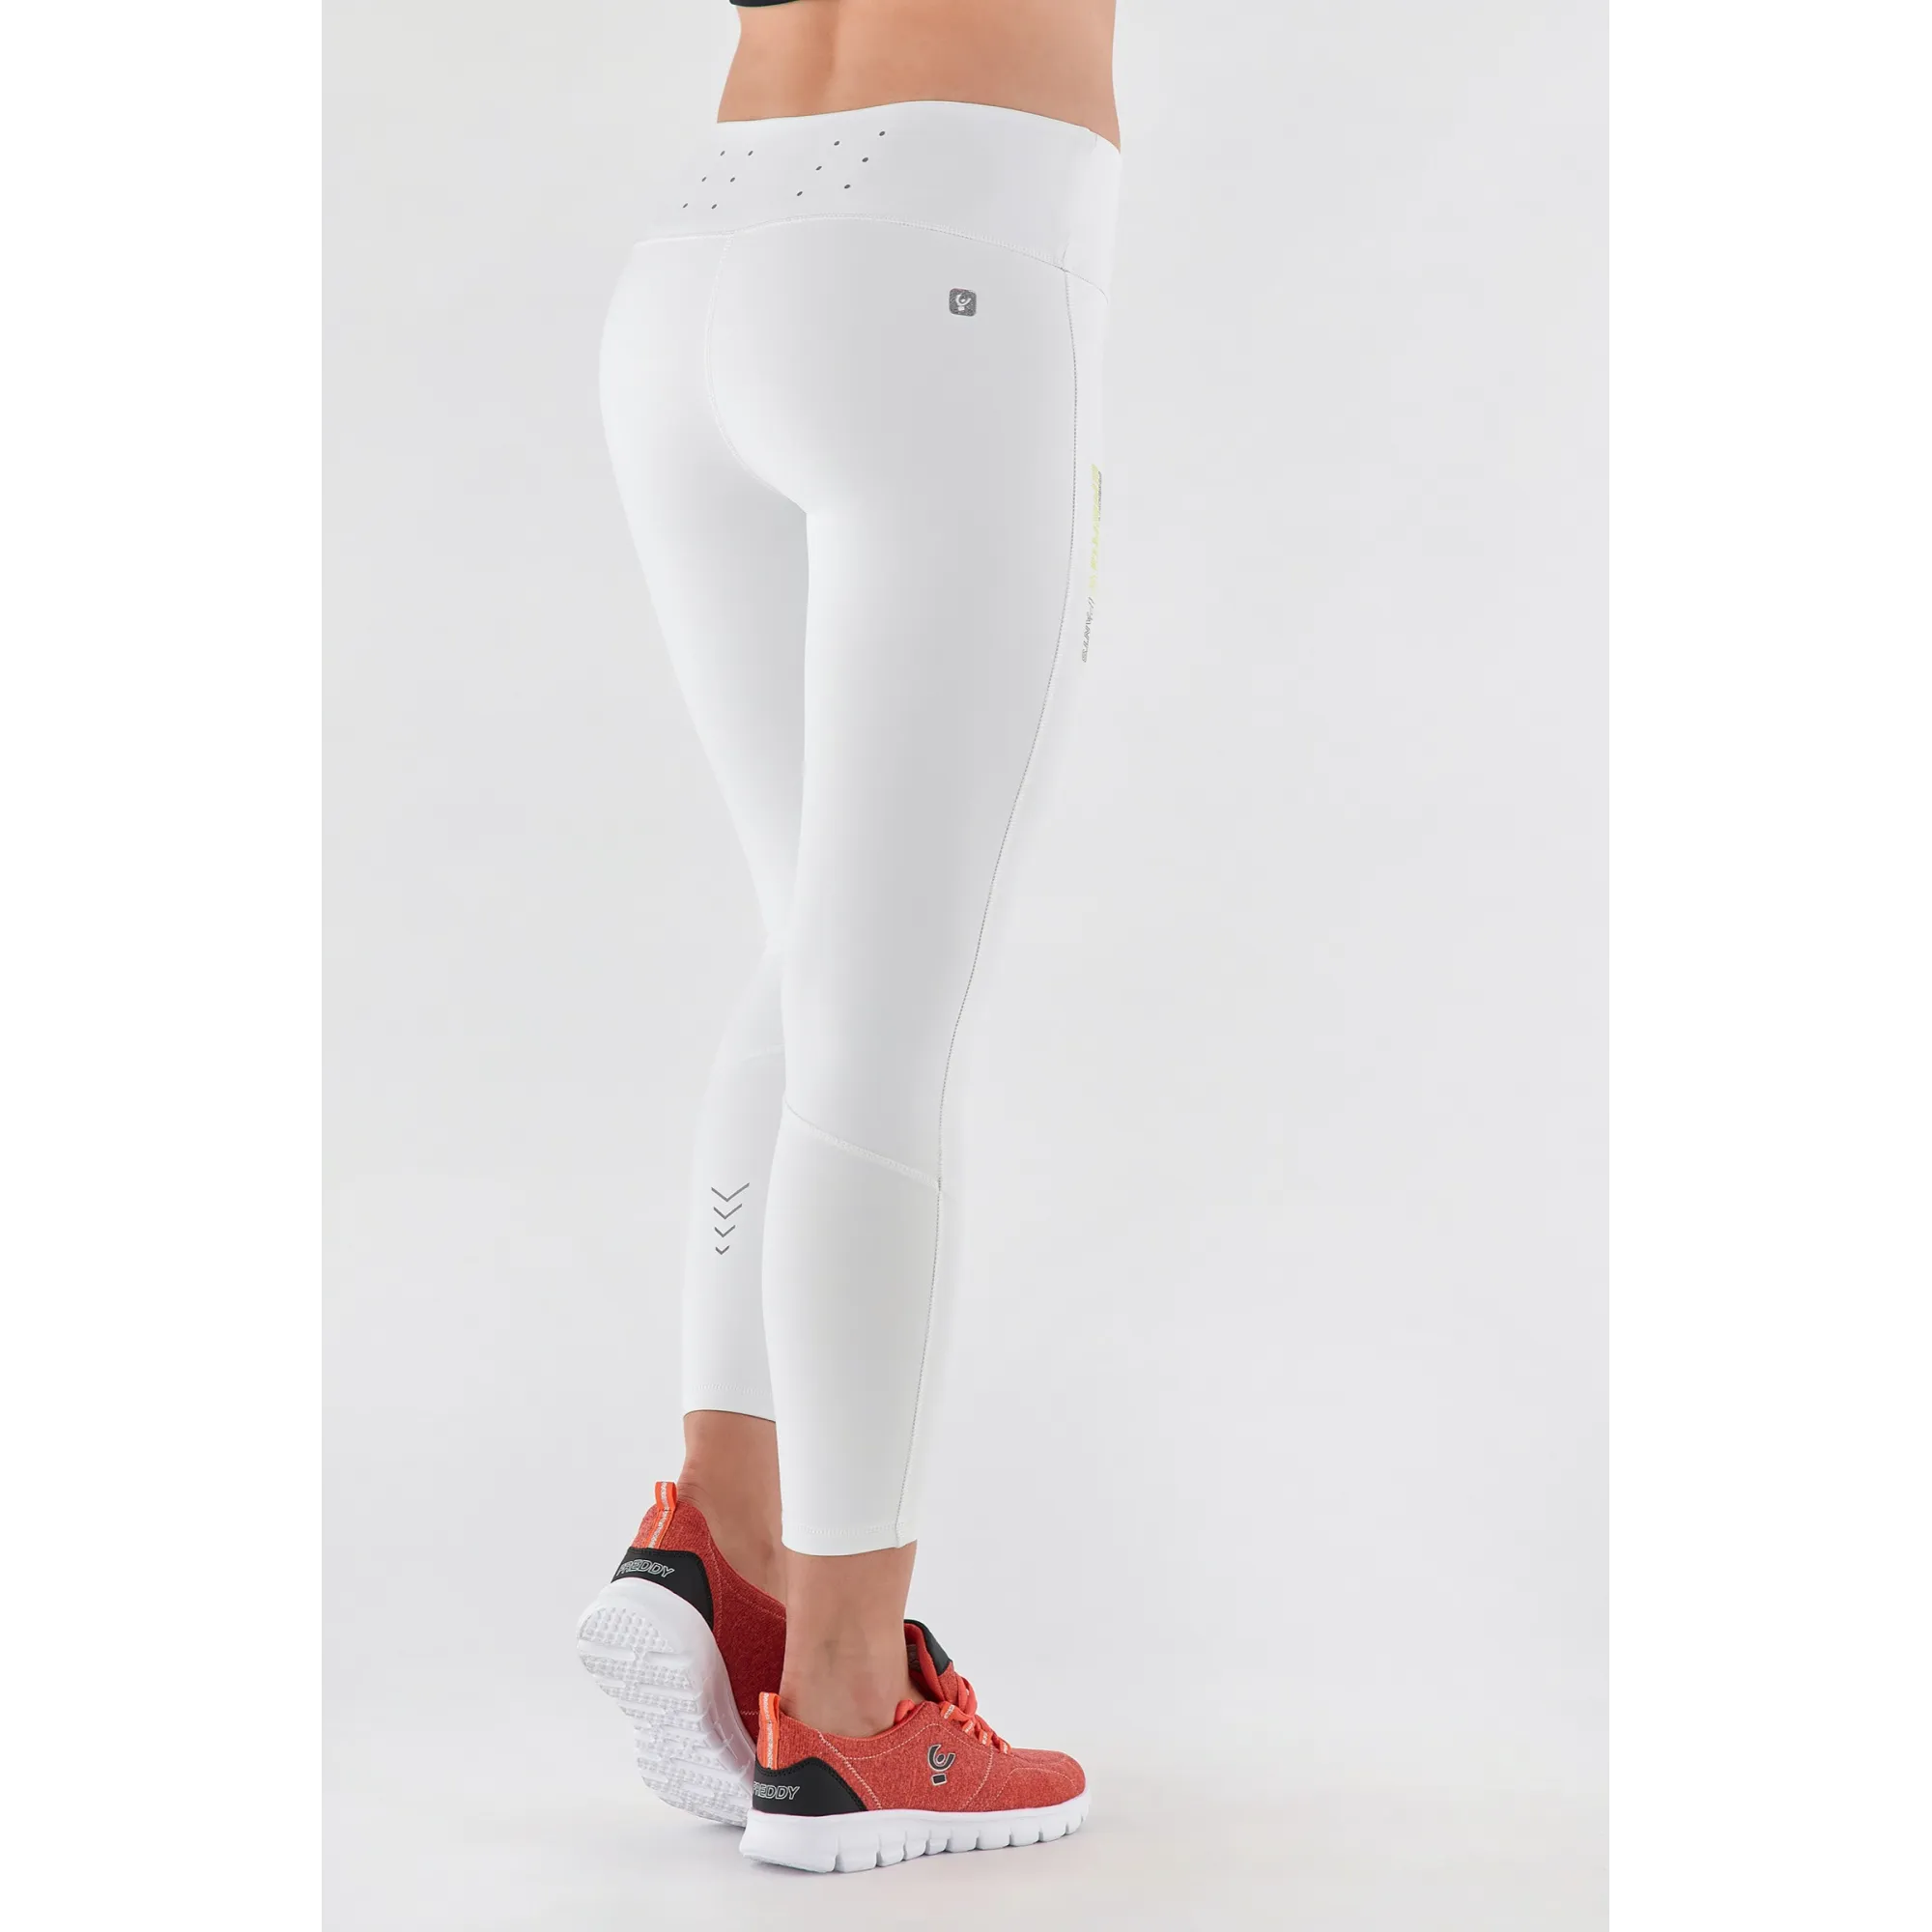 Energy Pants® 7/8 Sporthose - High Waist Skinny - Weiß